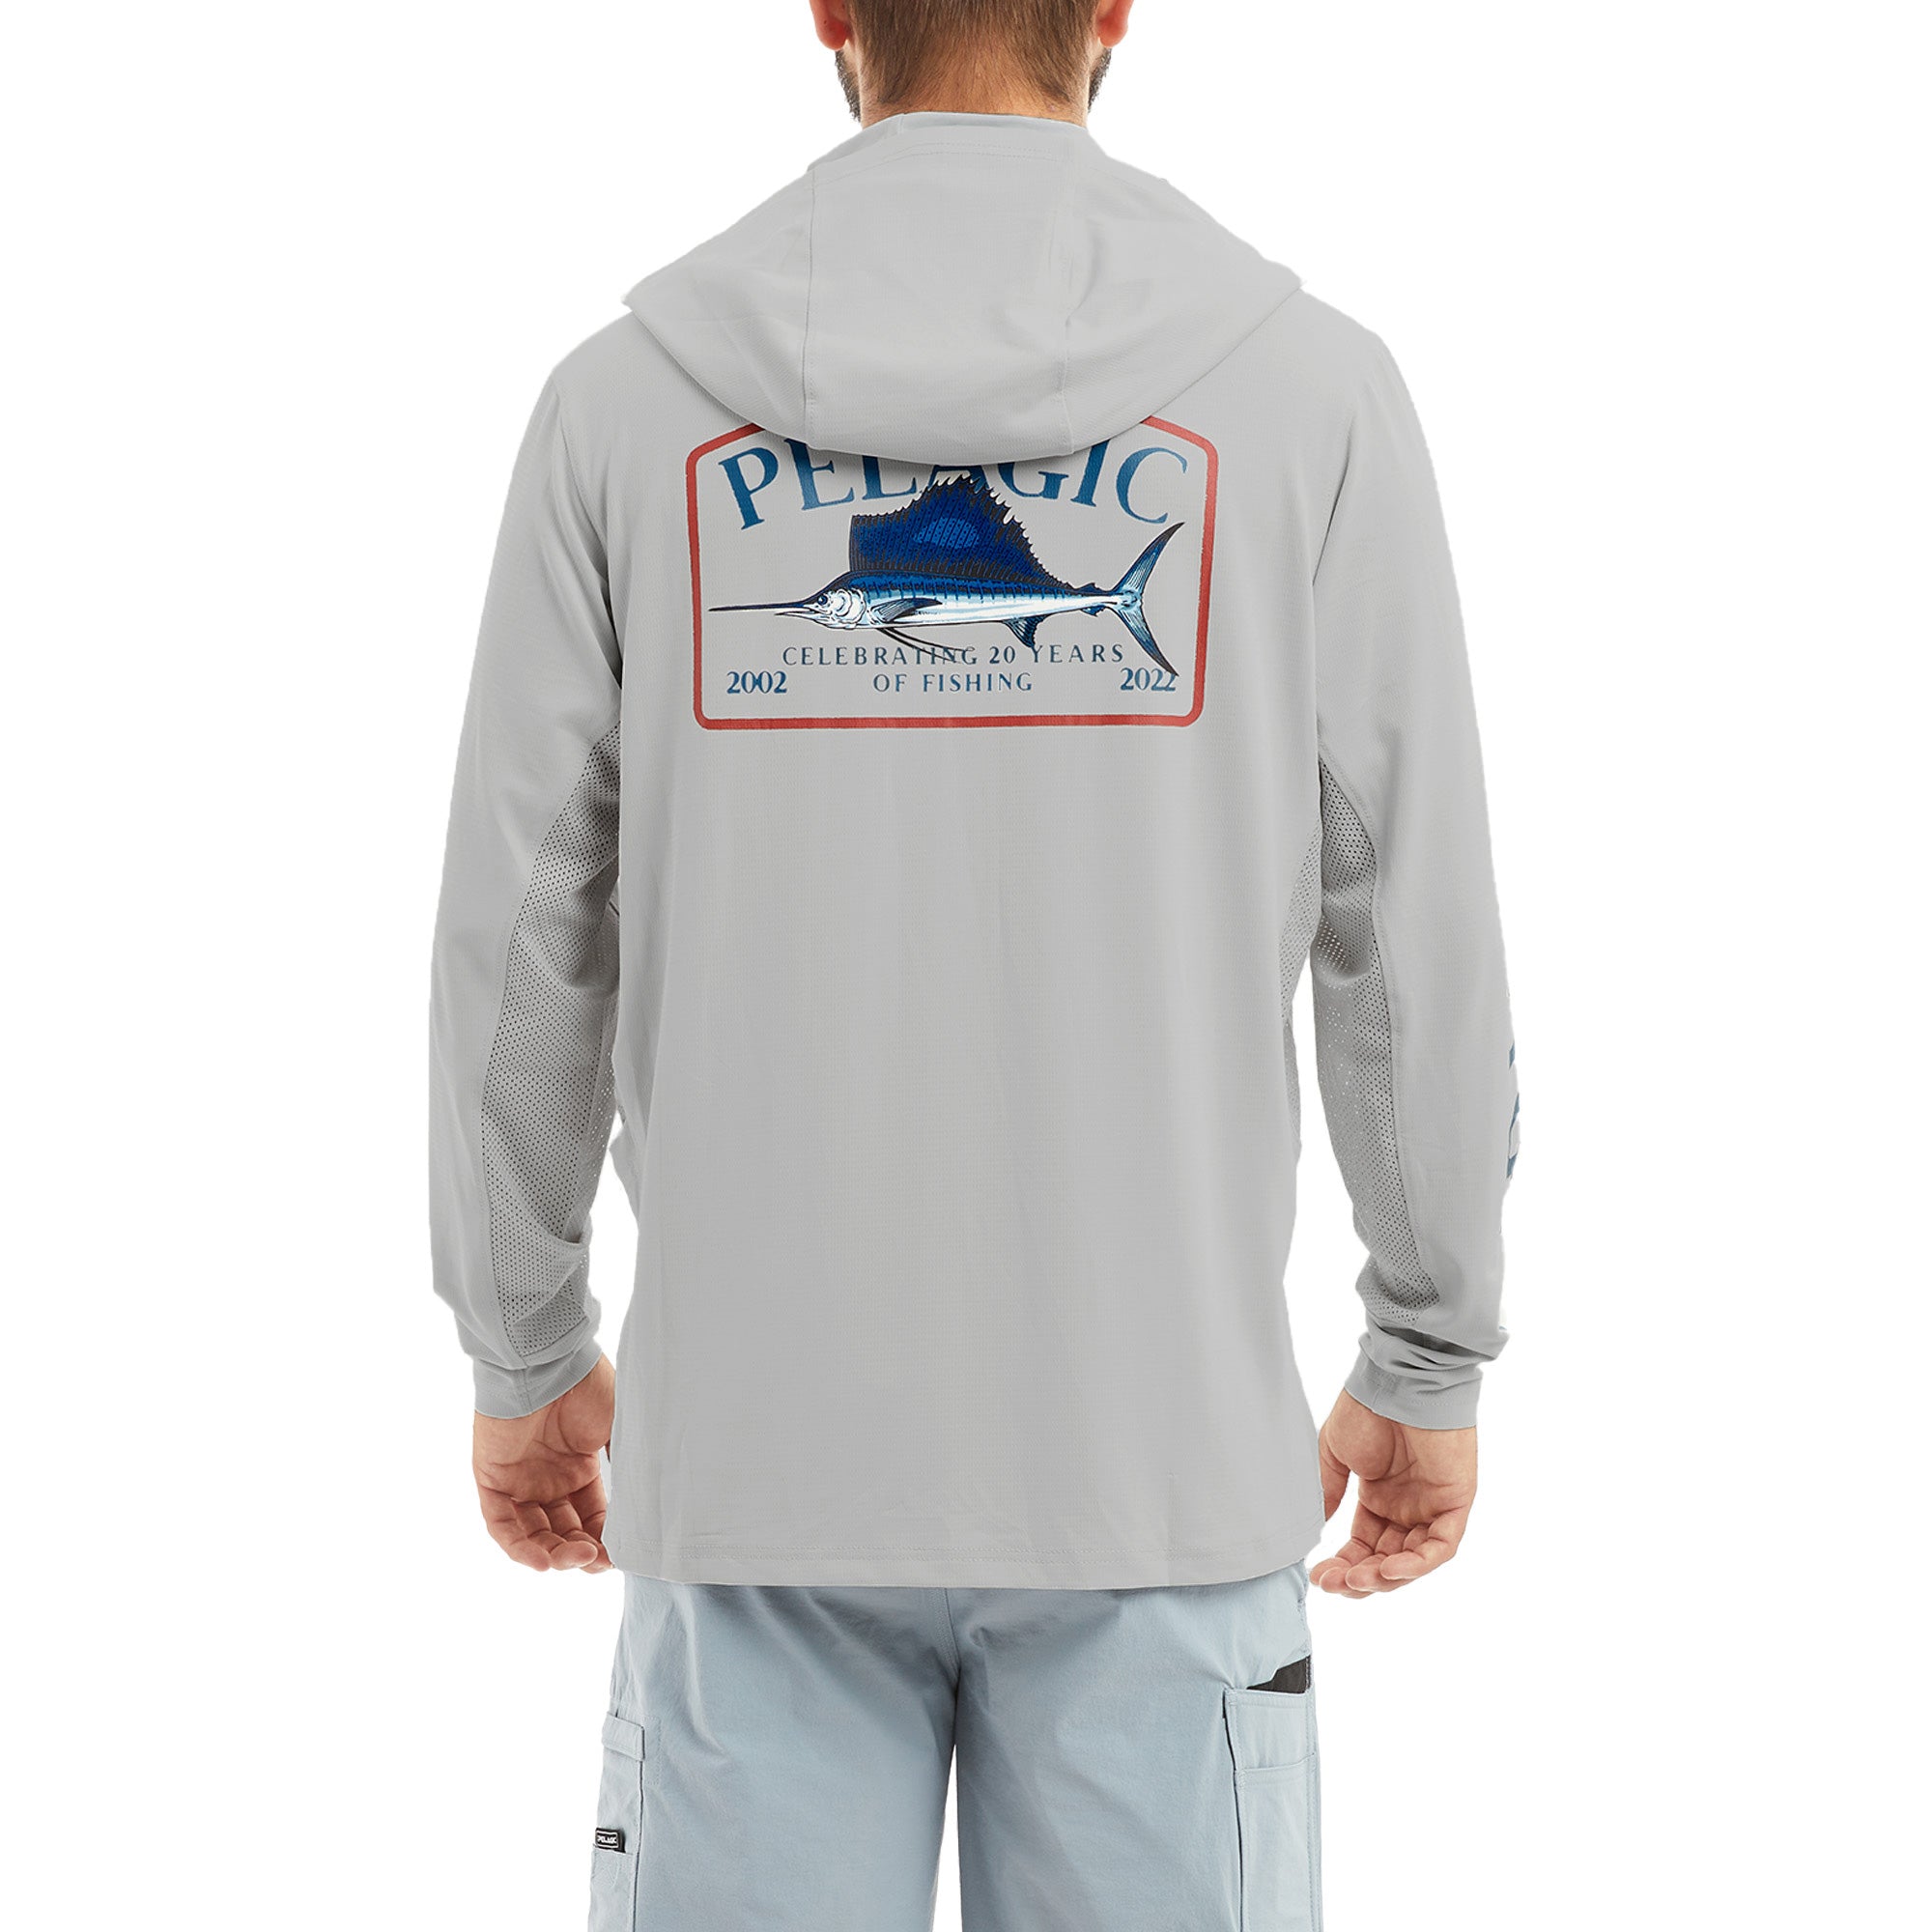 Pelagic Exo-Tech Fishing Long-Sleeve Shirt for Men - Light Grey